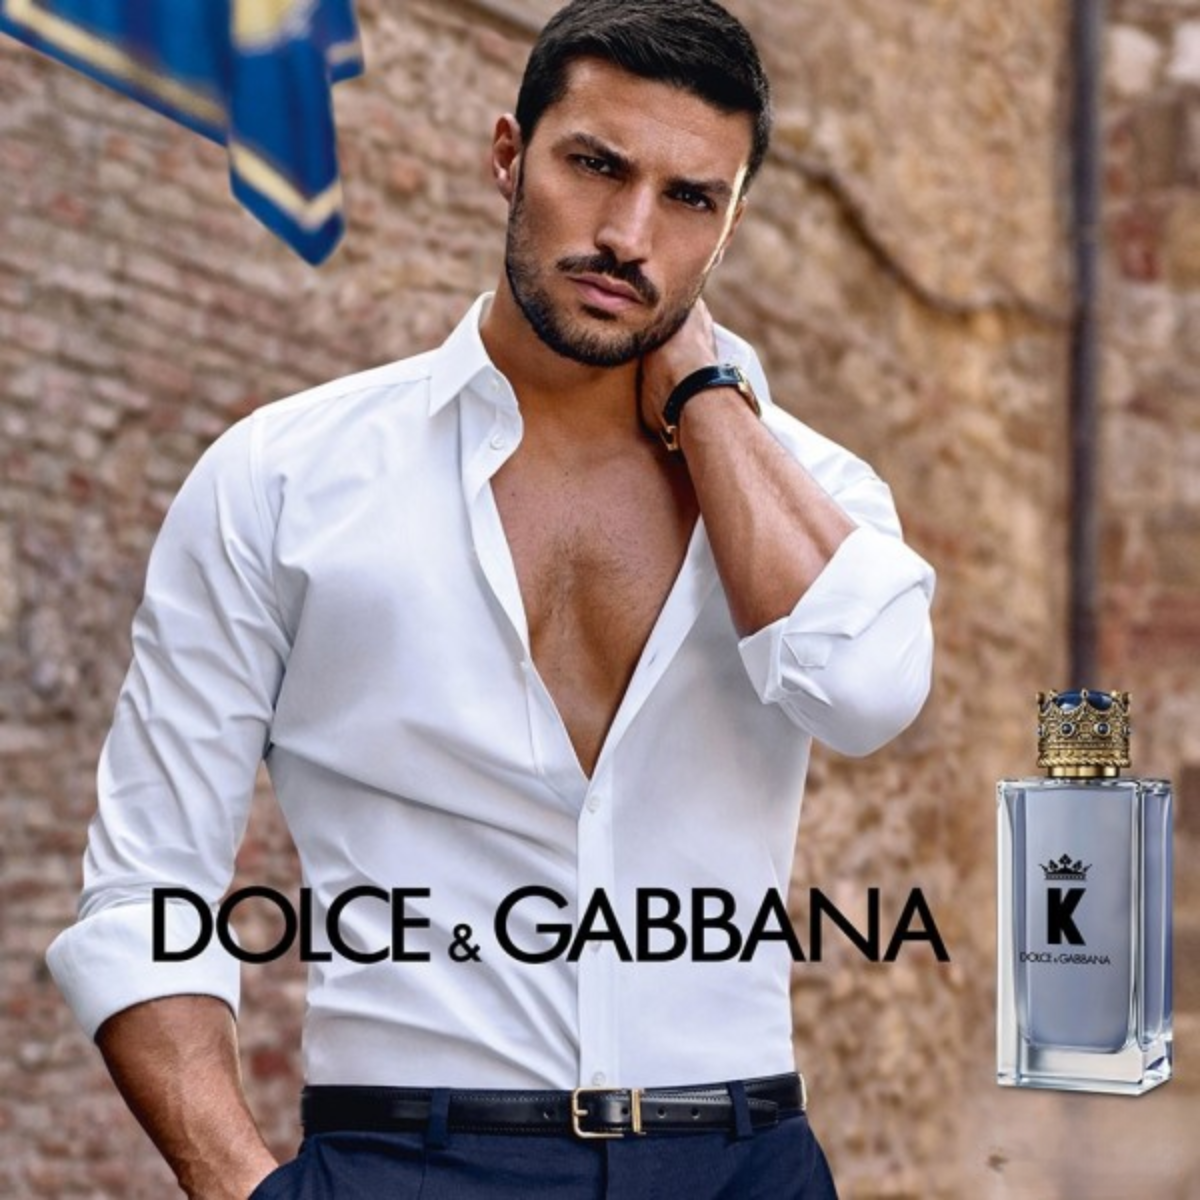 dolce & gabbana perfume hombre Comprar en tienda onlineshoppingcenterg Colombia centro de compras en linea osc1